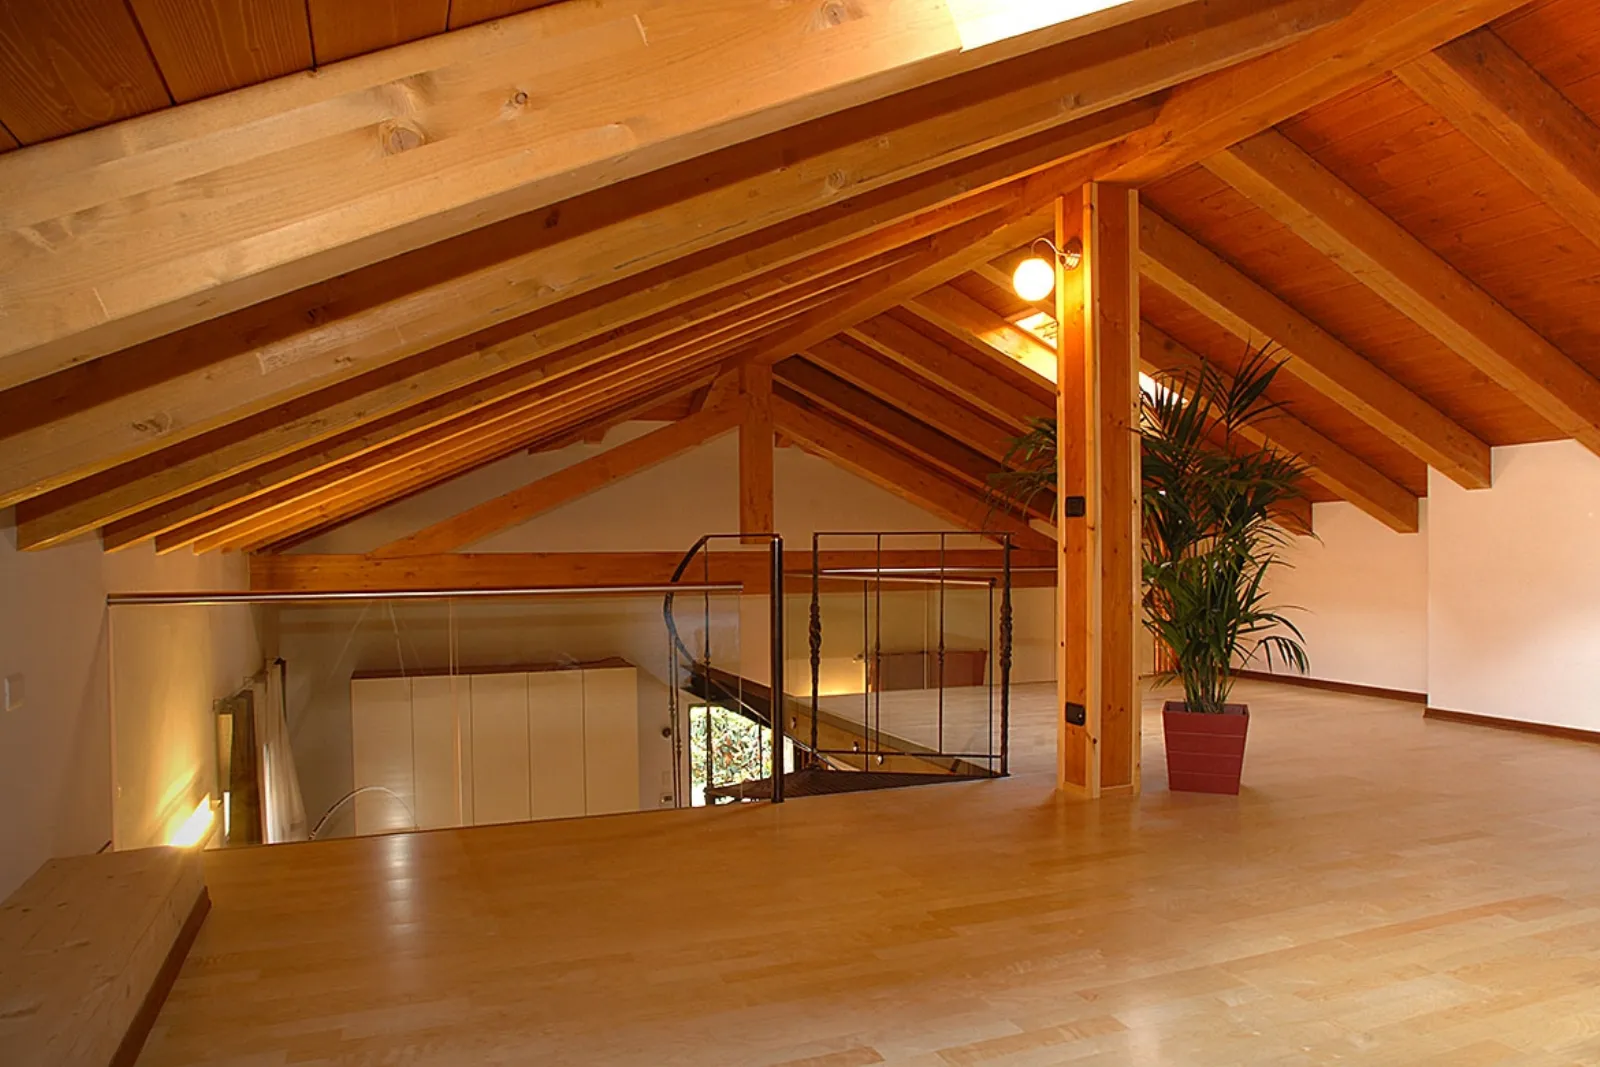 Tetti in legno progettazione casa for Tetti in legno lamellare particolari costruttivi